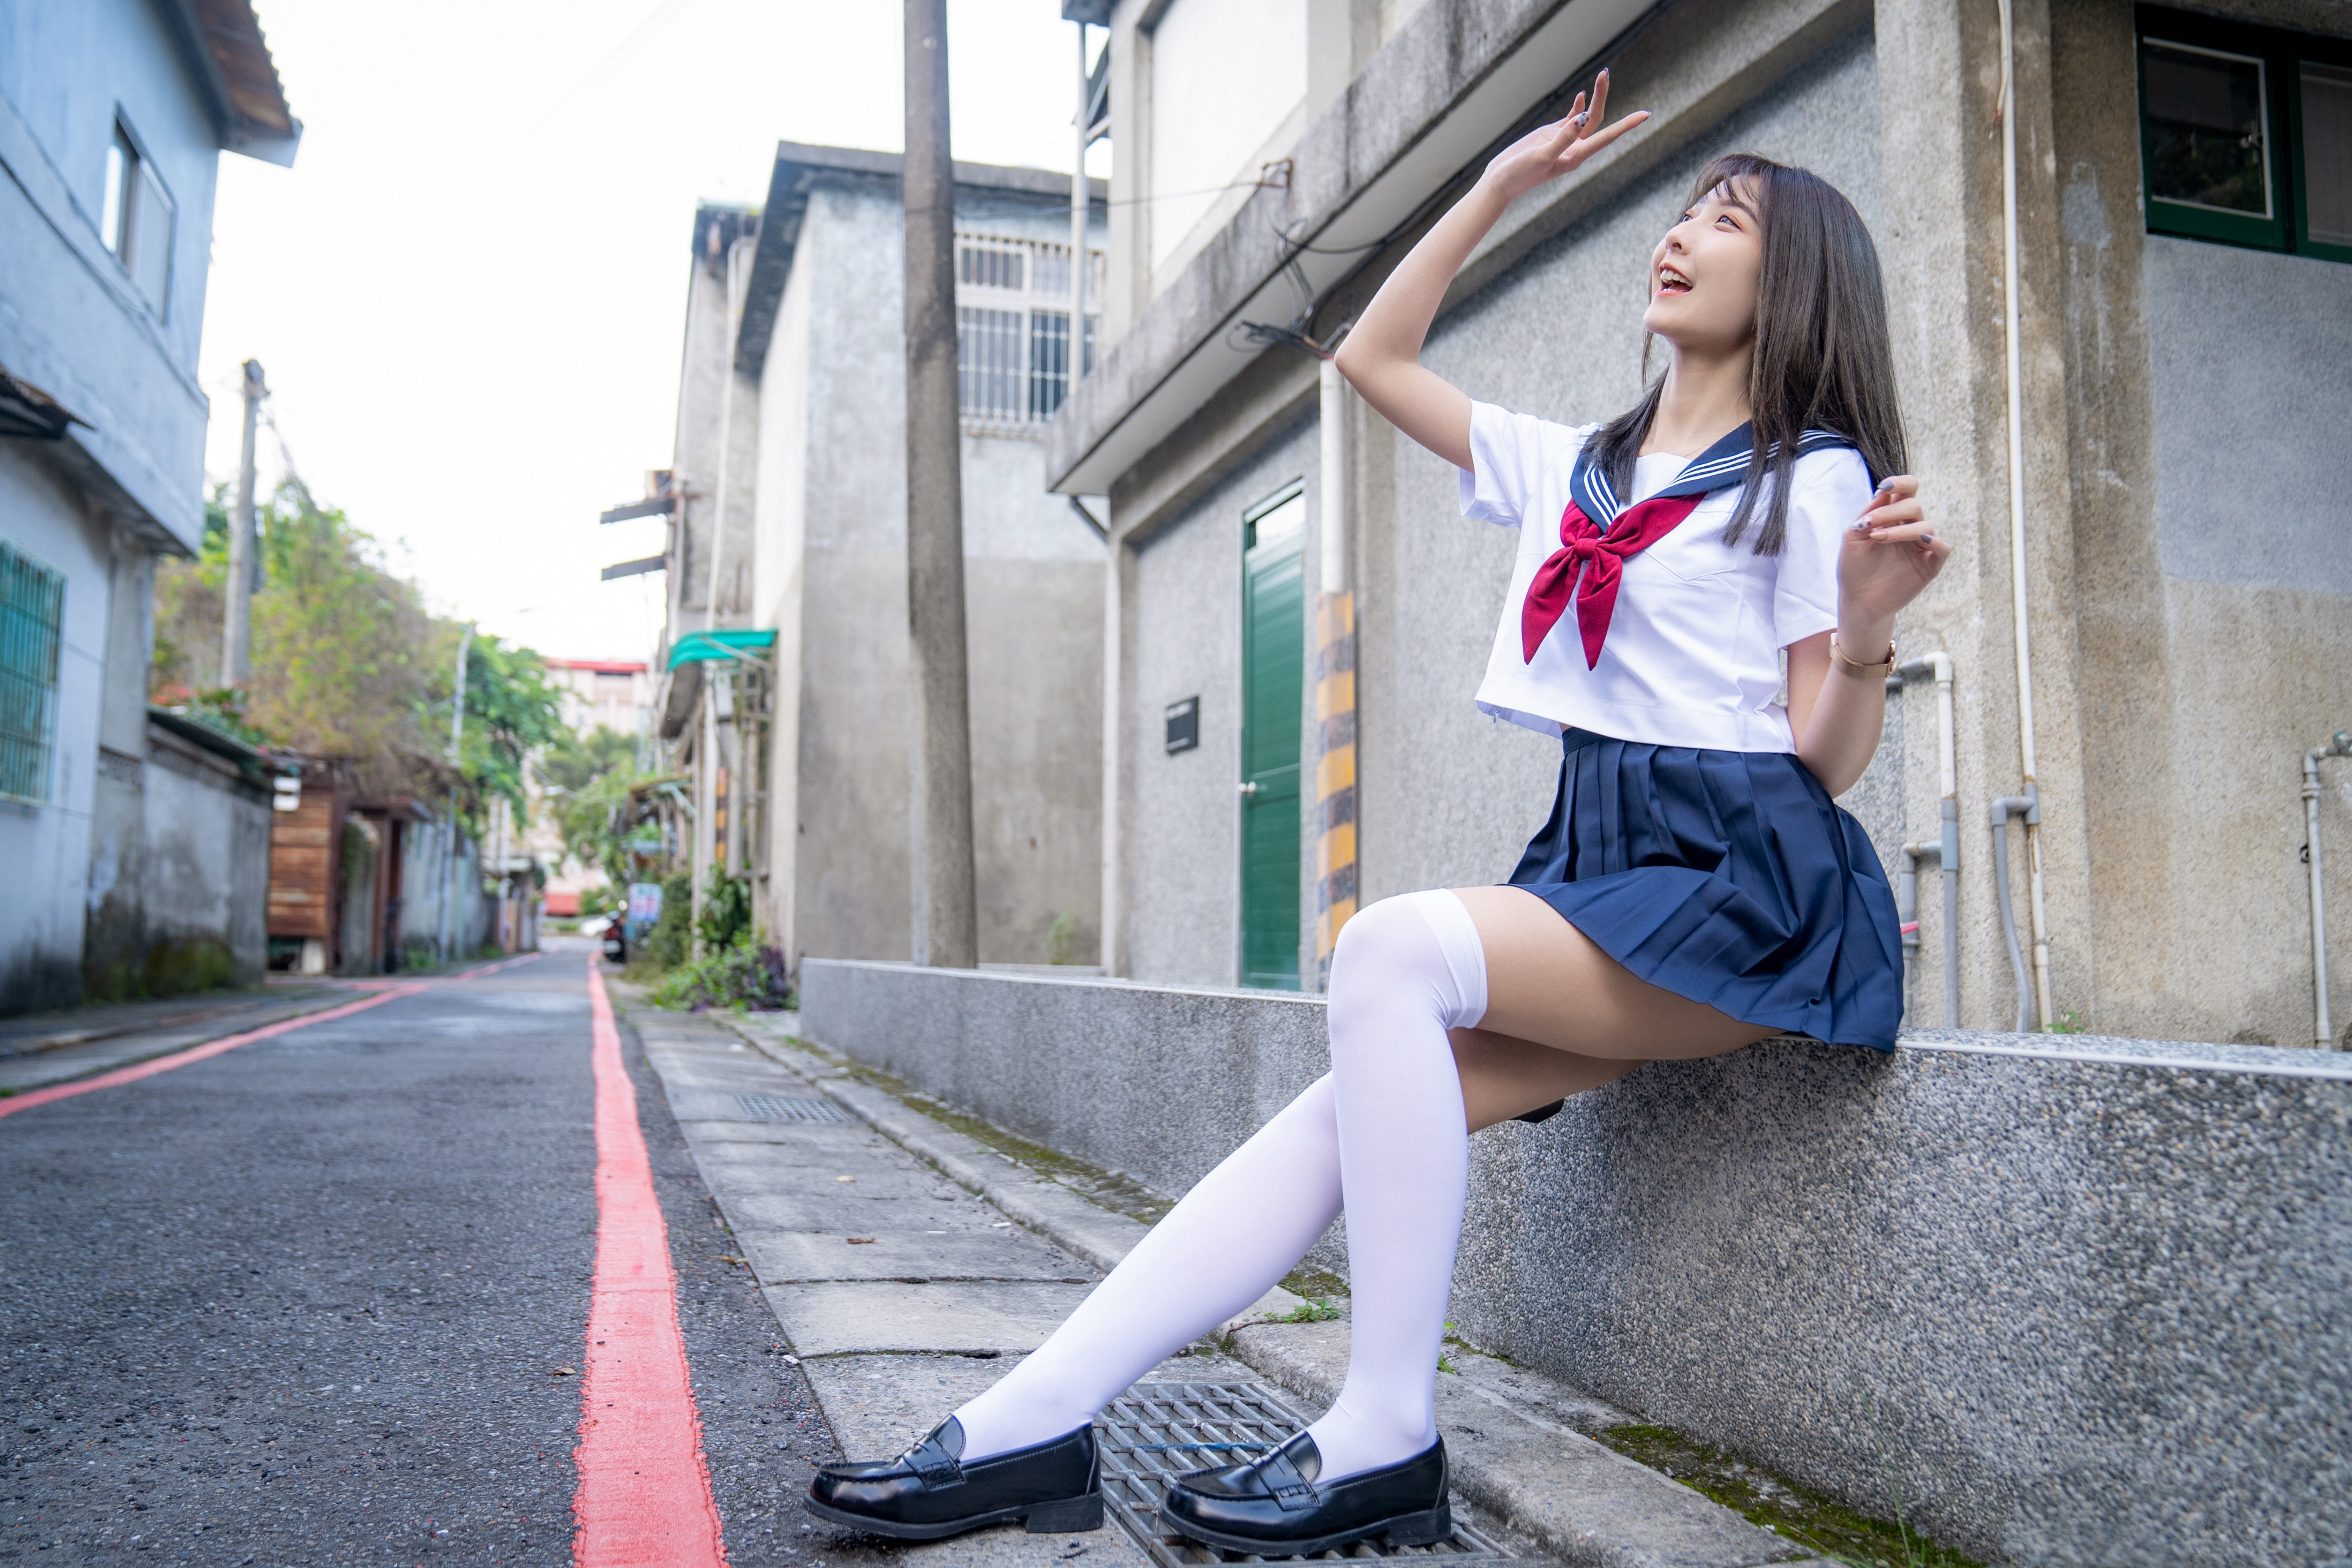 People 3840x2560 women model Asian brunette cosplay school uniform sailor uniform knee-highs depth of field smiling outdoors women outdoors schoolgirl